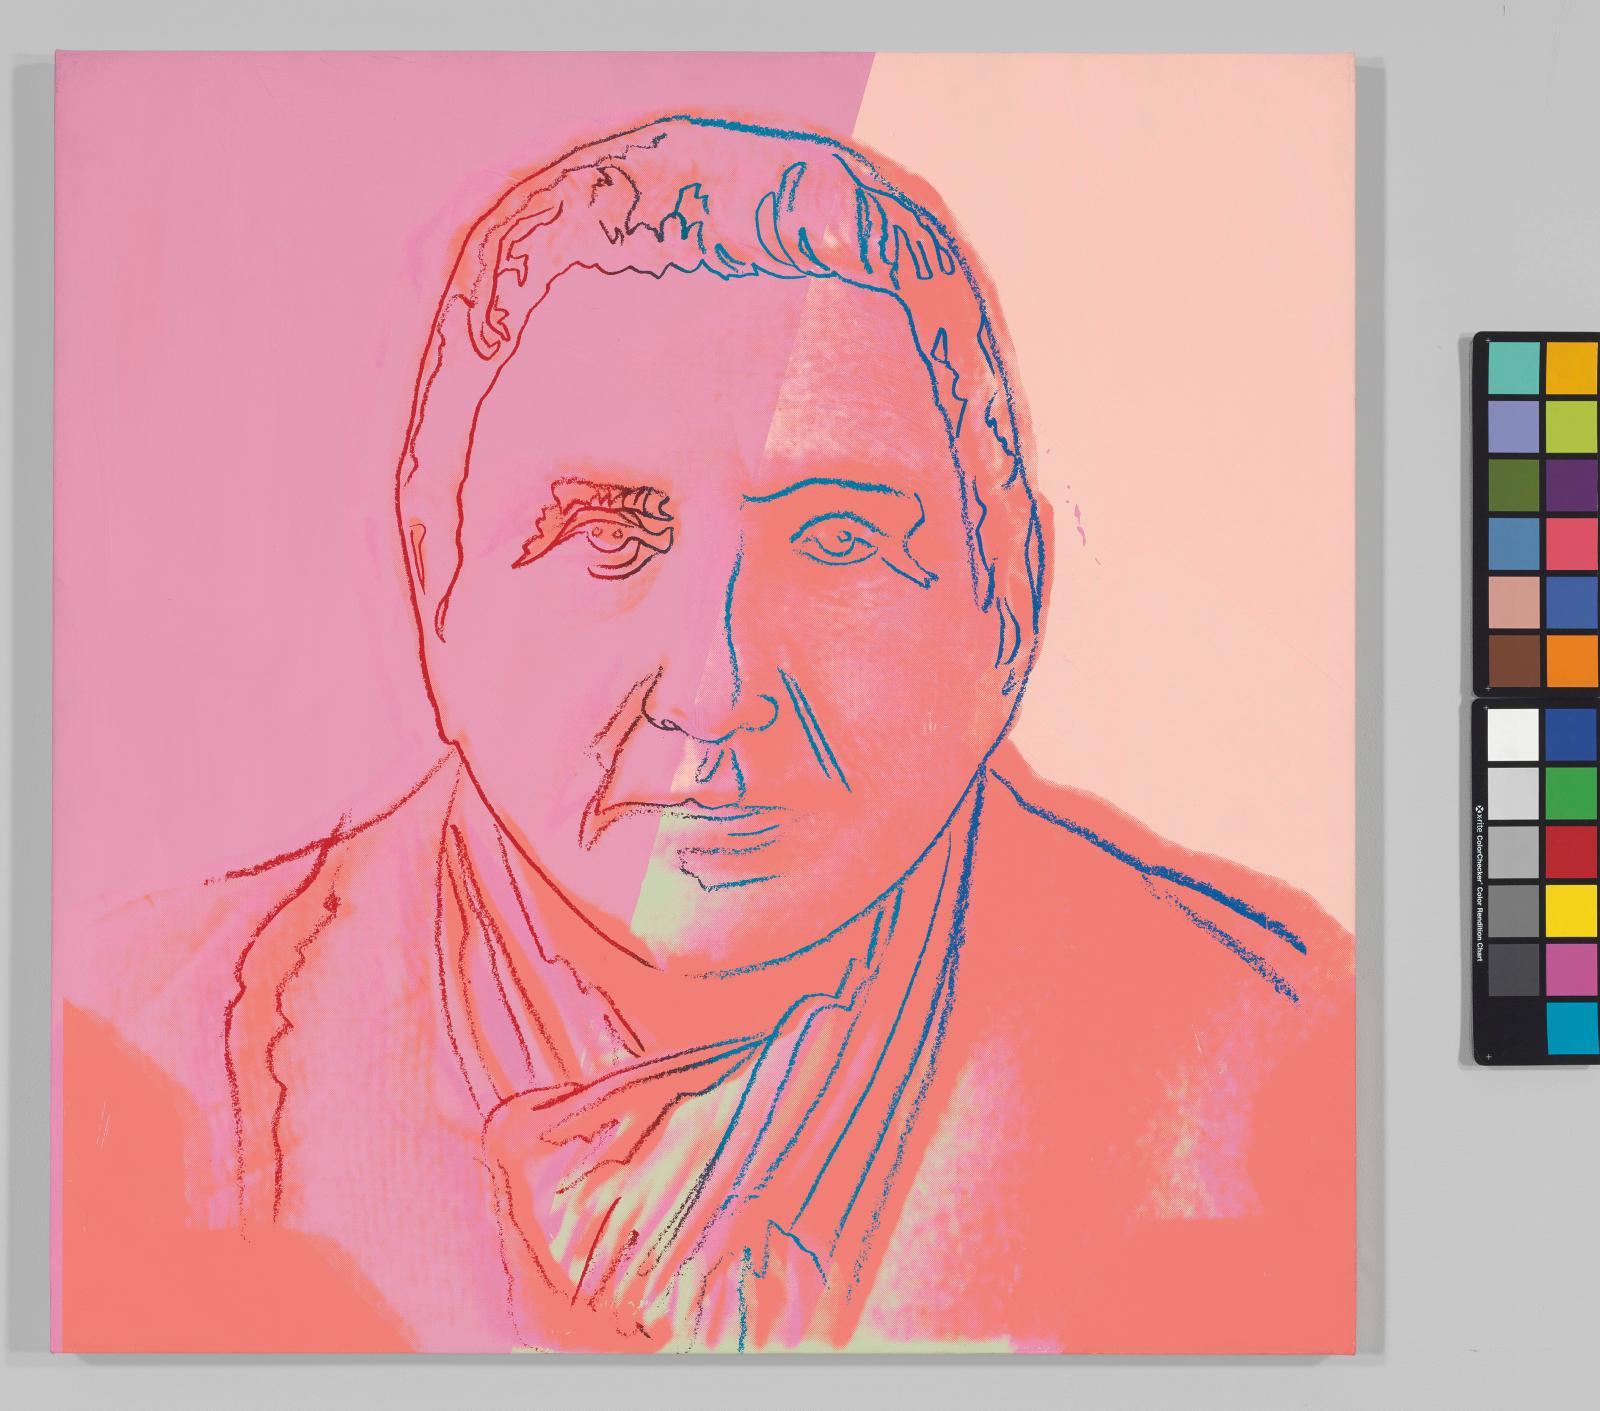 Au musée du Luxembourg, l’expo « Gertrude Stein et Pablo Picasso » déçoit